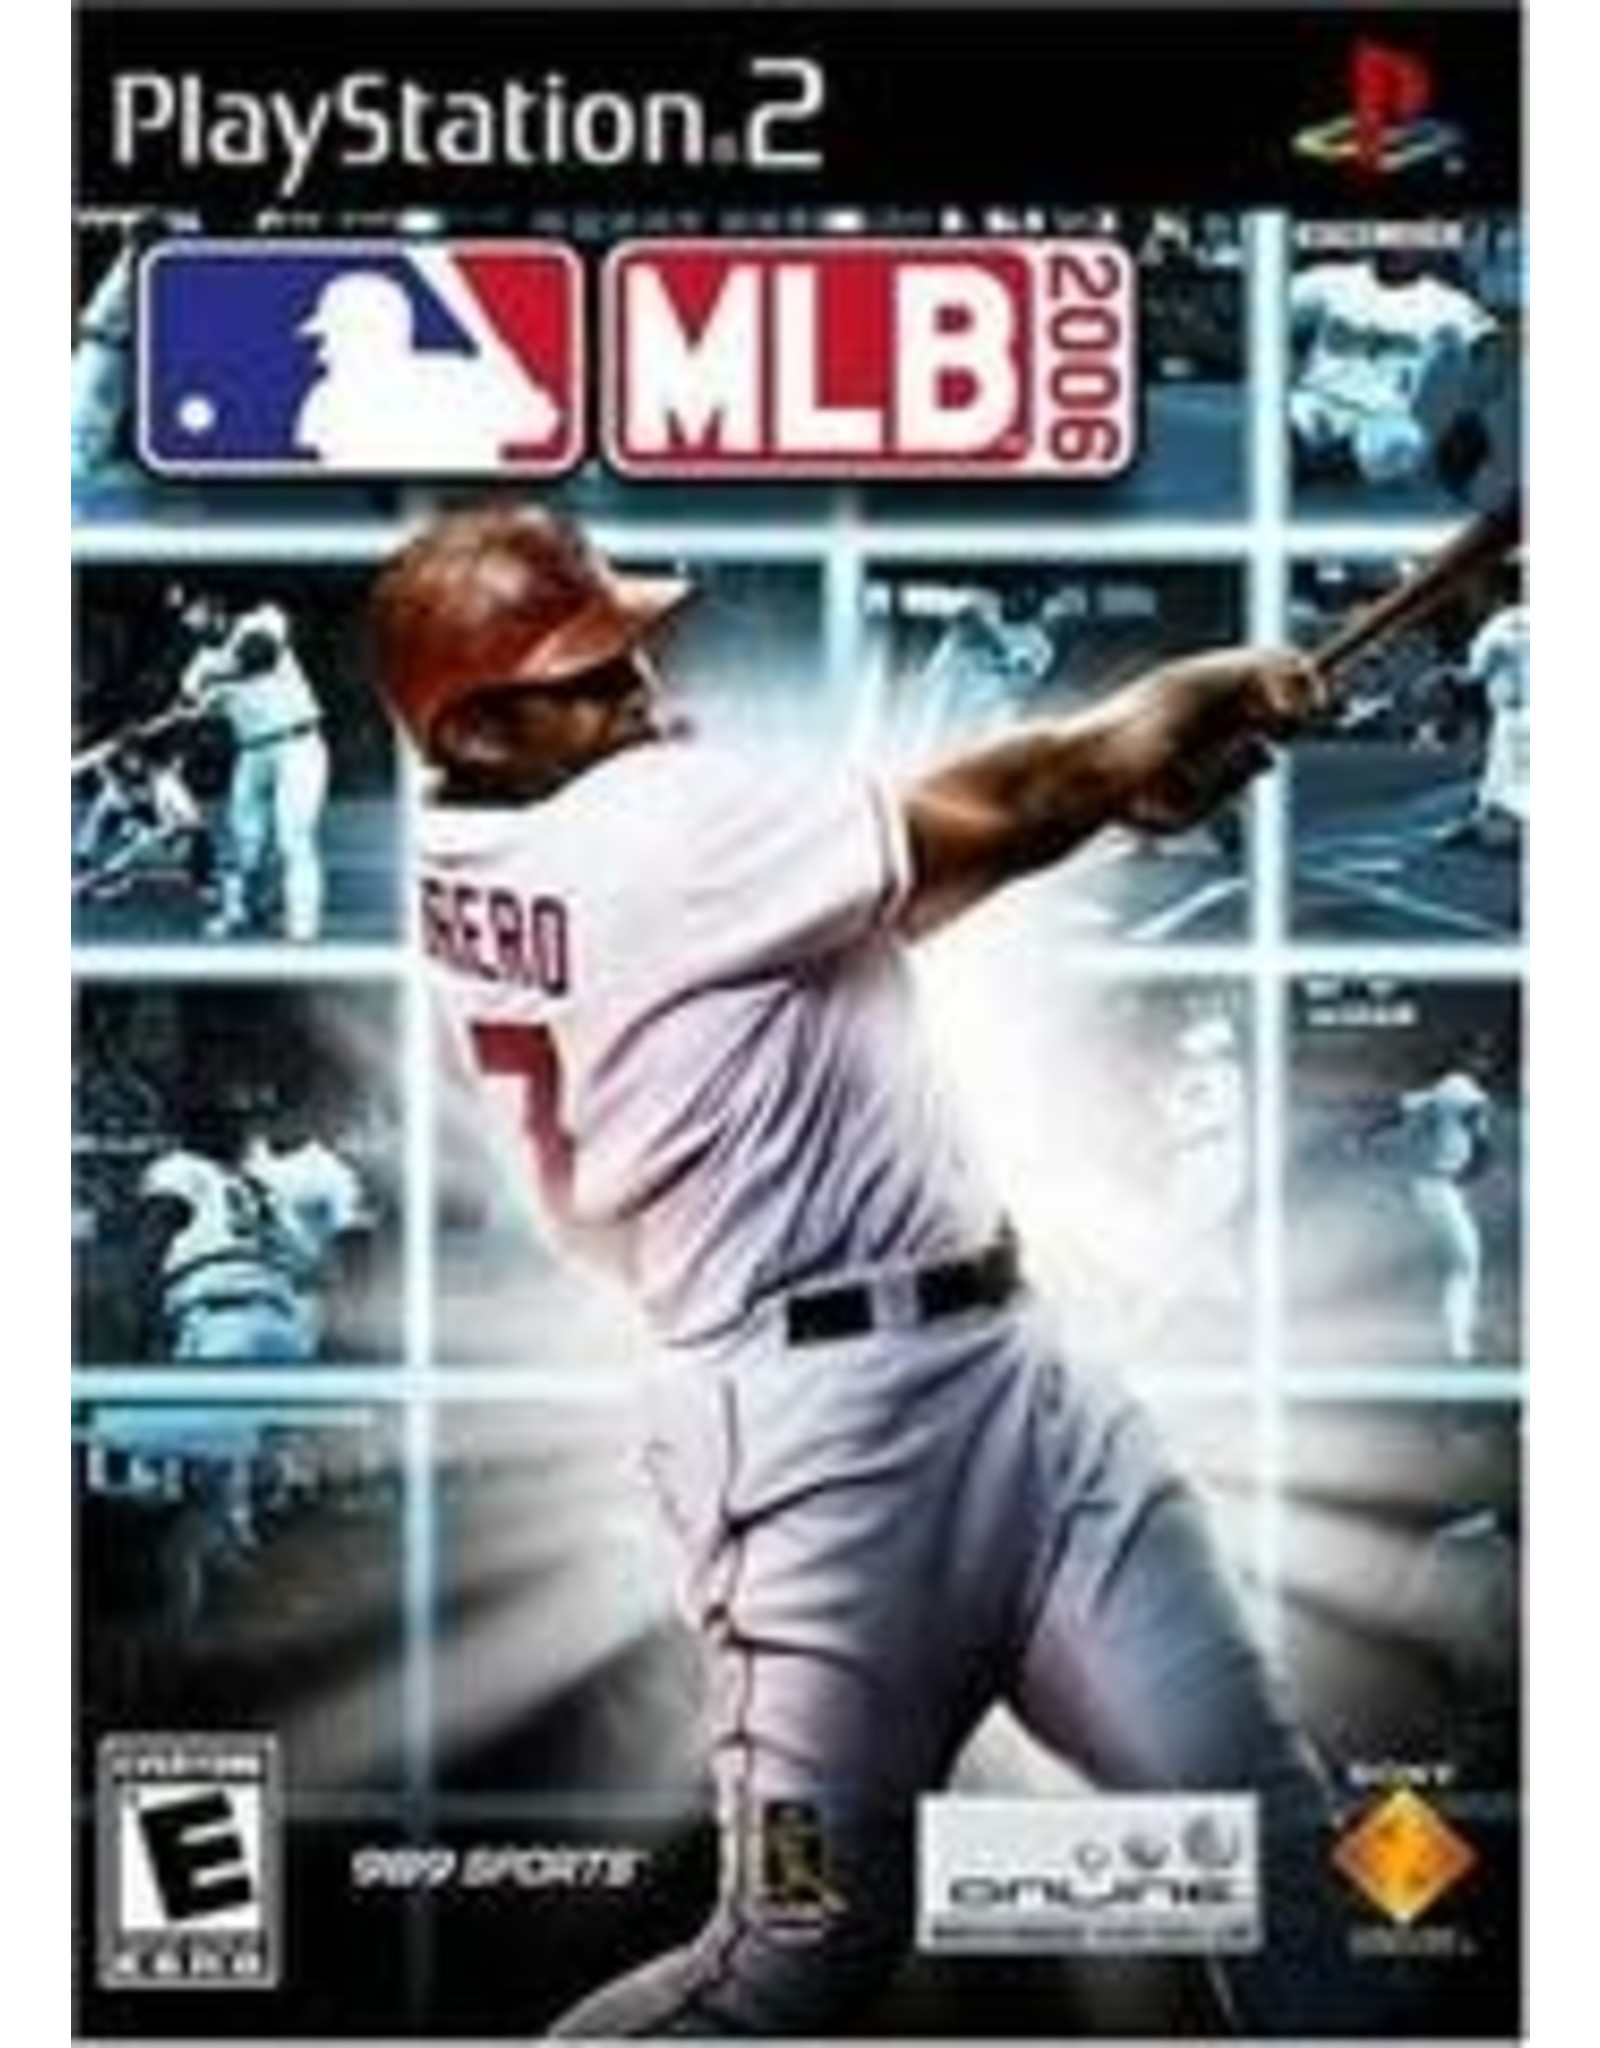 Playstation 2 MLB 2006 (No Manual)